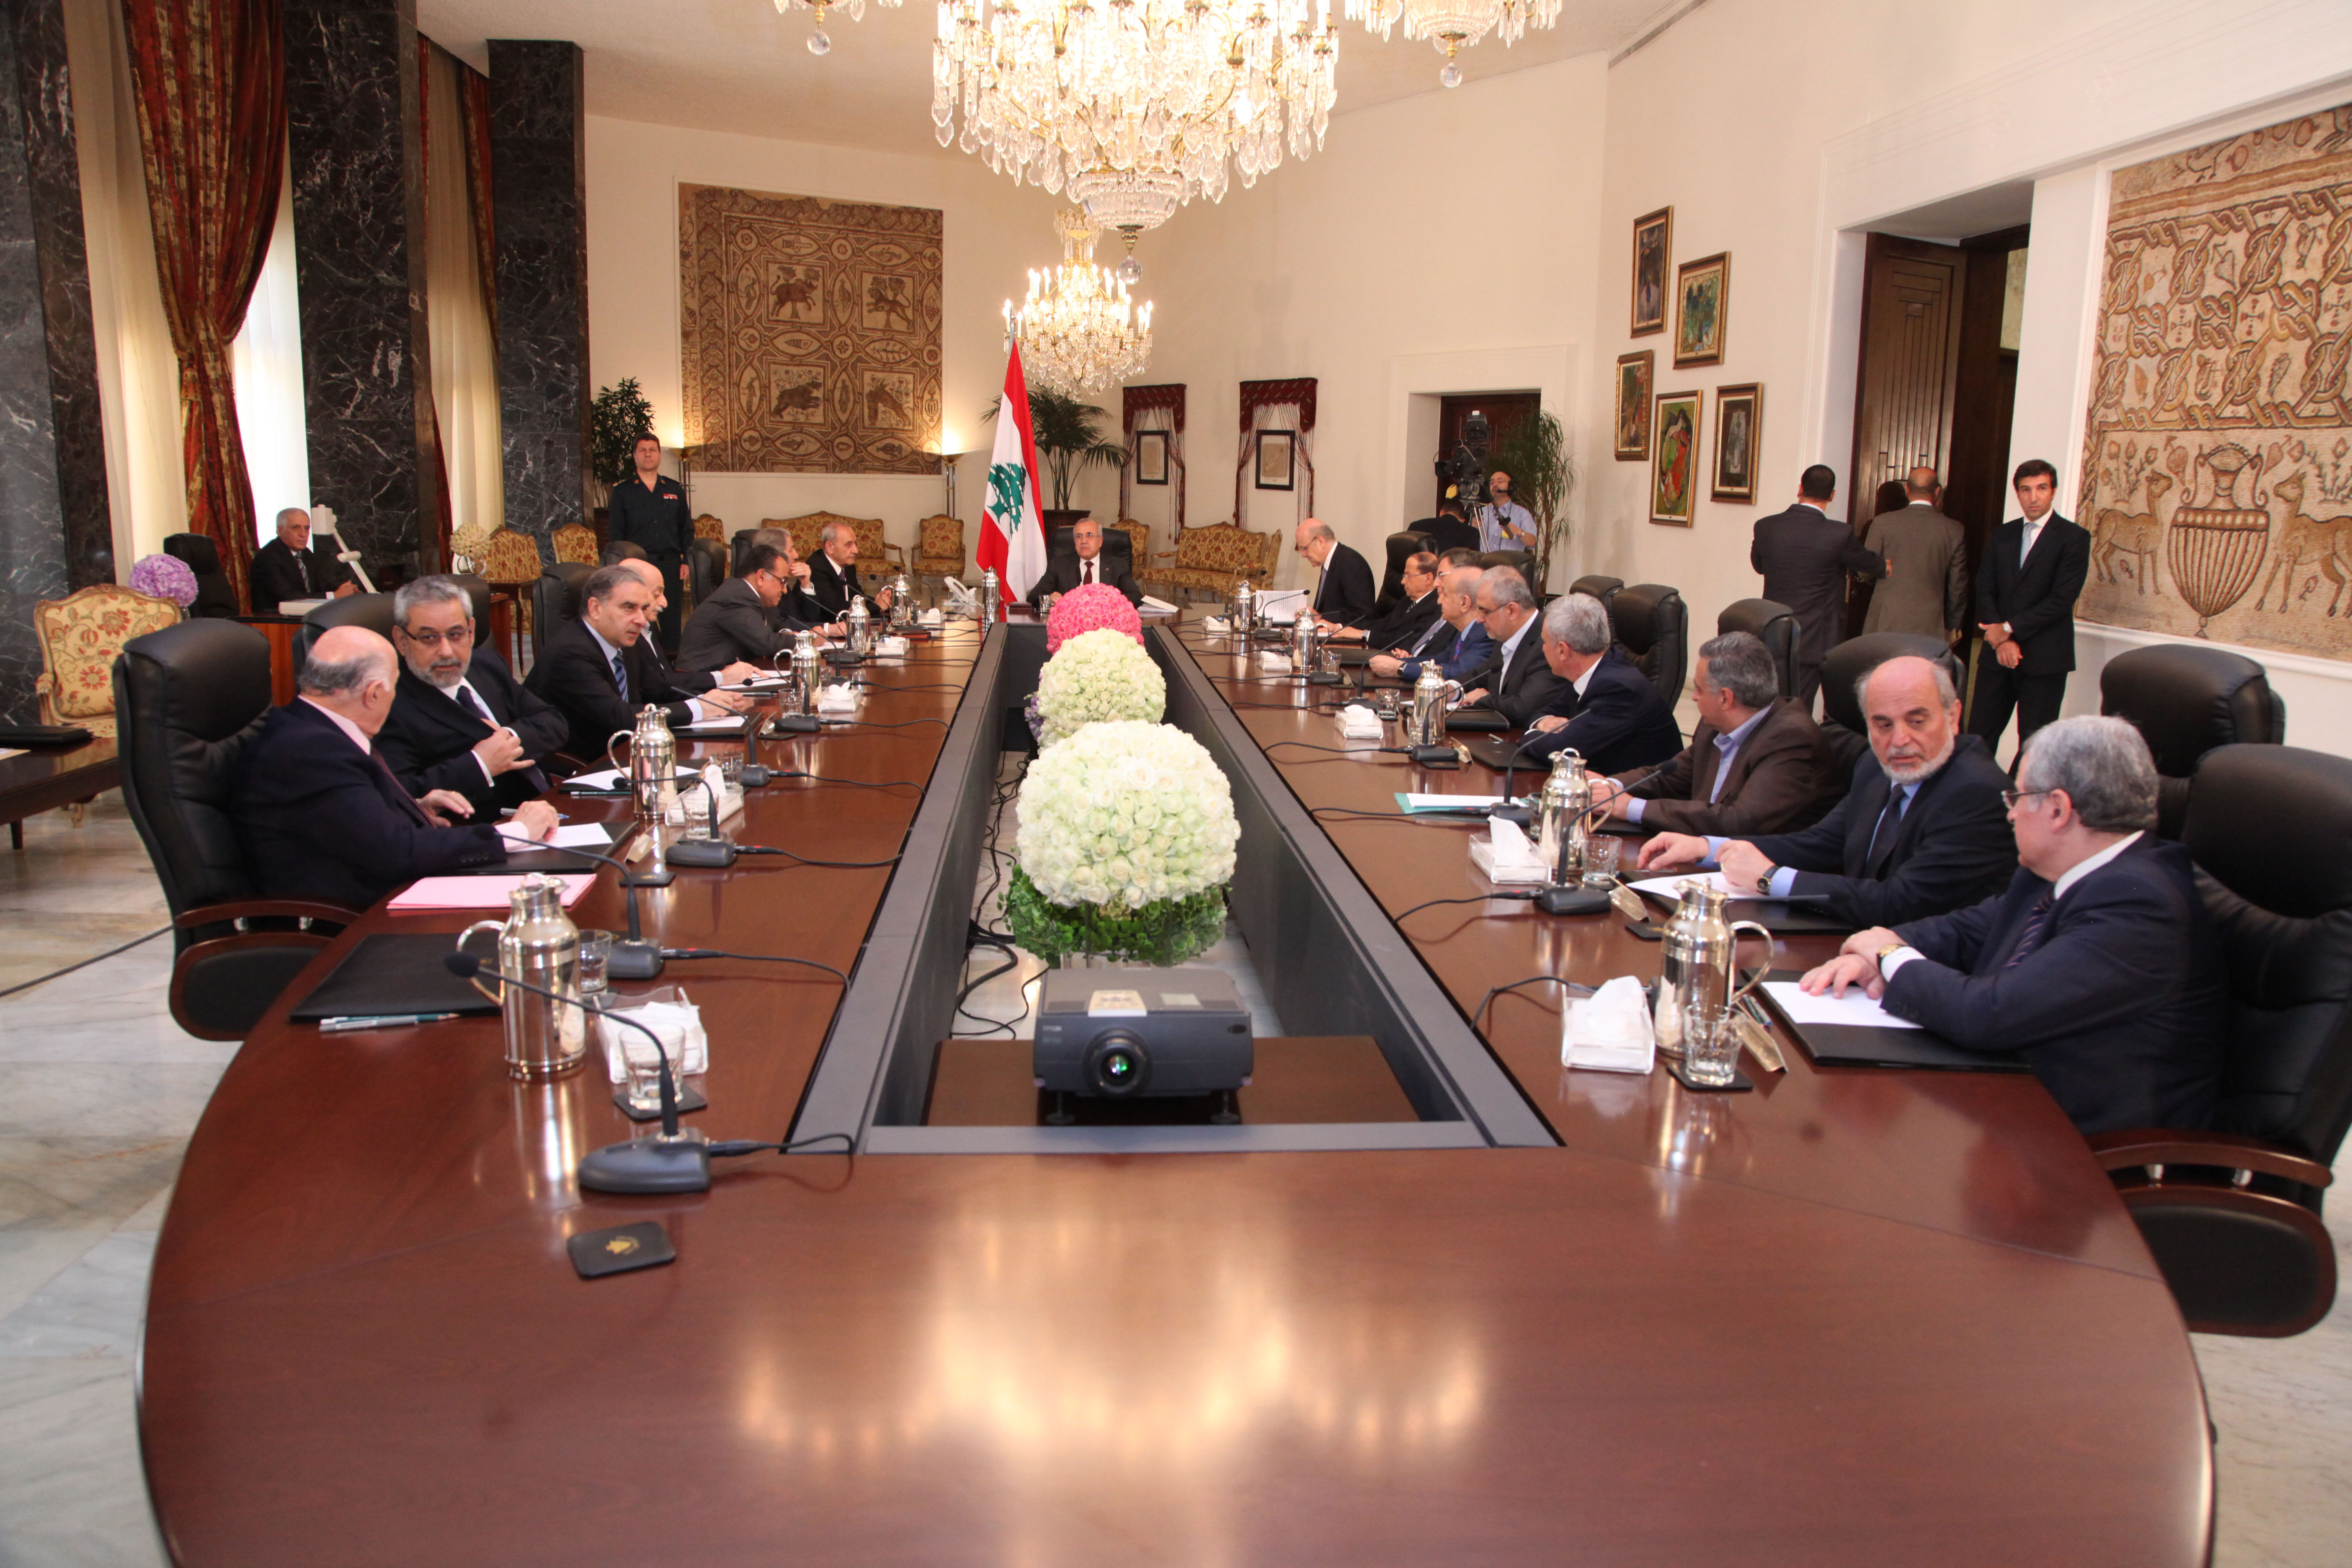 وزير فرنسيّ: نحترم إلتزاماتنا على عكس السلطة اللبنانية